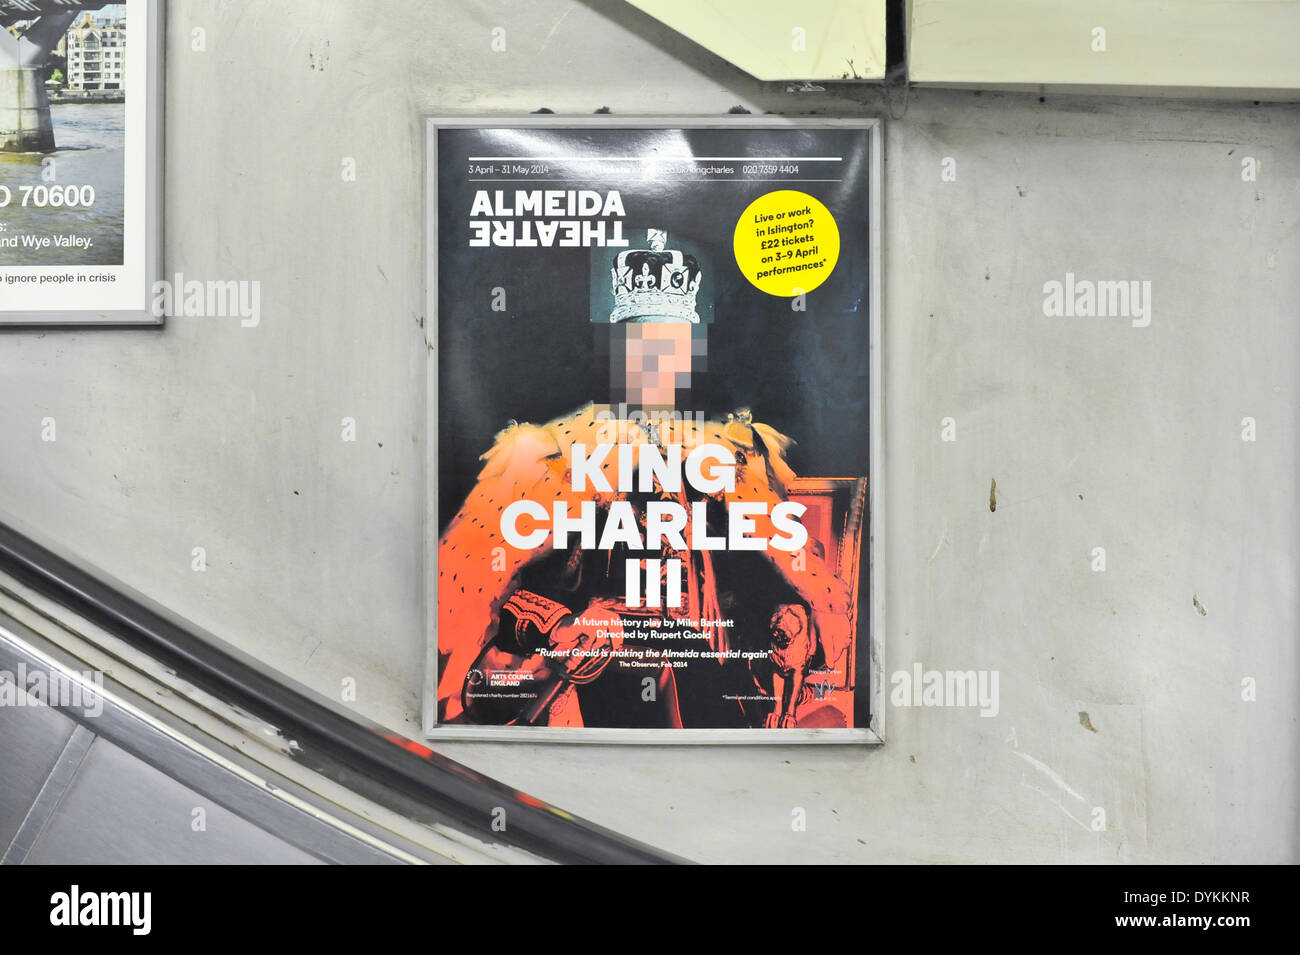 La station de métro Angel, Londres, Royaume-Uni. 21 avril 2014. Affiches exposées dans le métro montrant jouer ont son visage, tandis que l'affiche pixélisée à l'extérieur du théâtre ne fonctionne pas. Crédit : Matthieu Chattle/Alamy Live News Banque D'Images